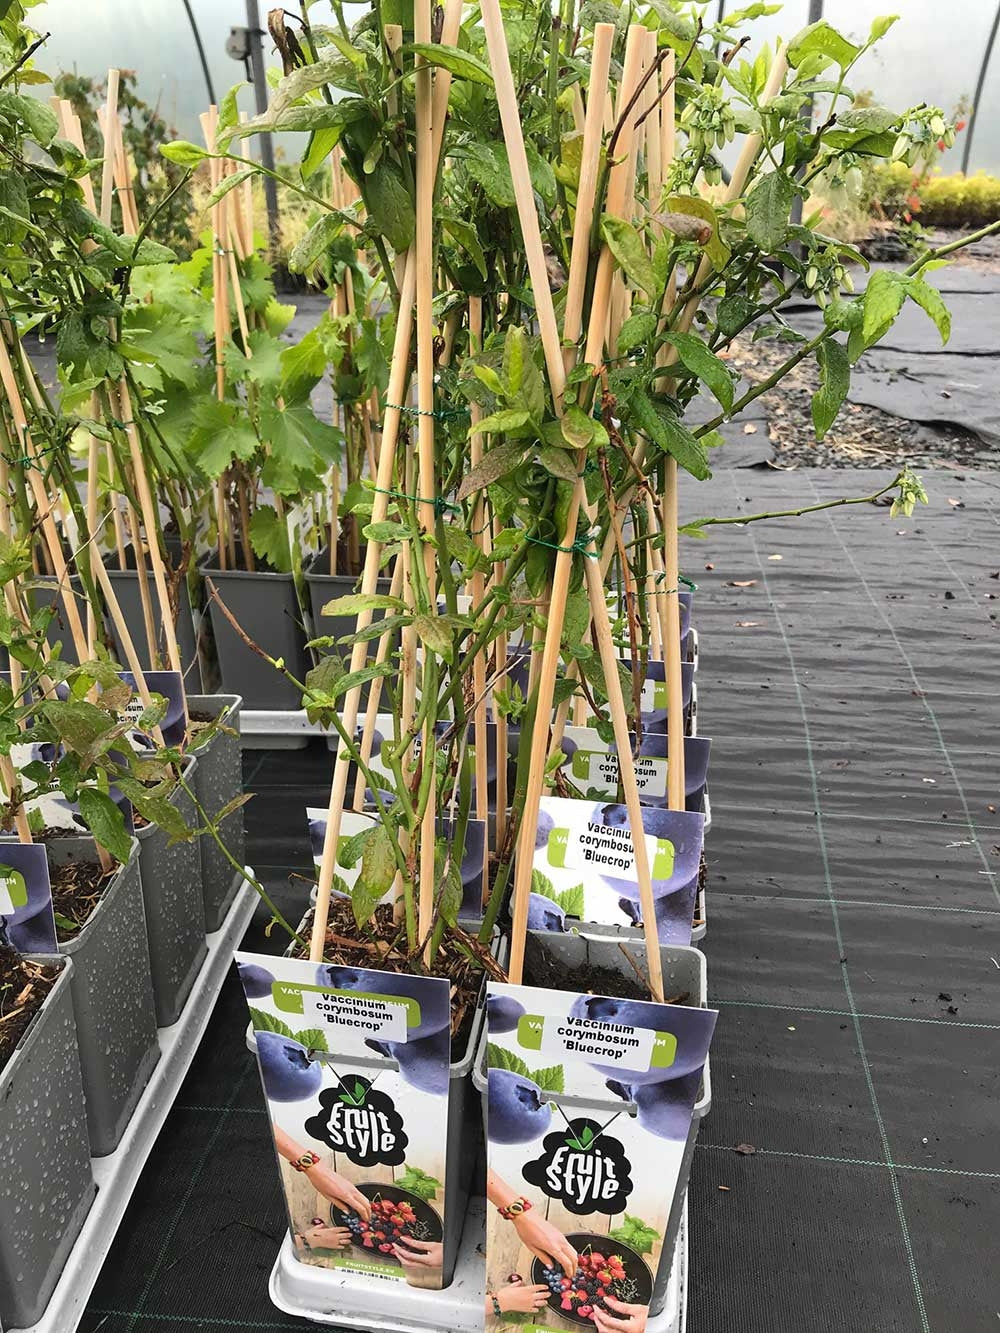 2 Blueberry Plants - 'Bluecrop' - apx 30-45cm - High Yield - Self-Fertile - 2L Pots